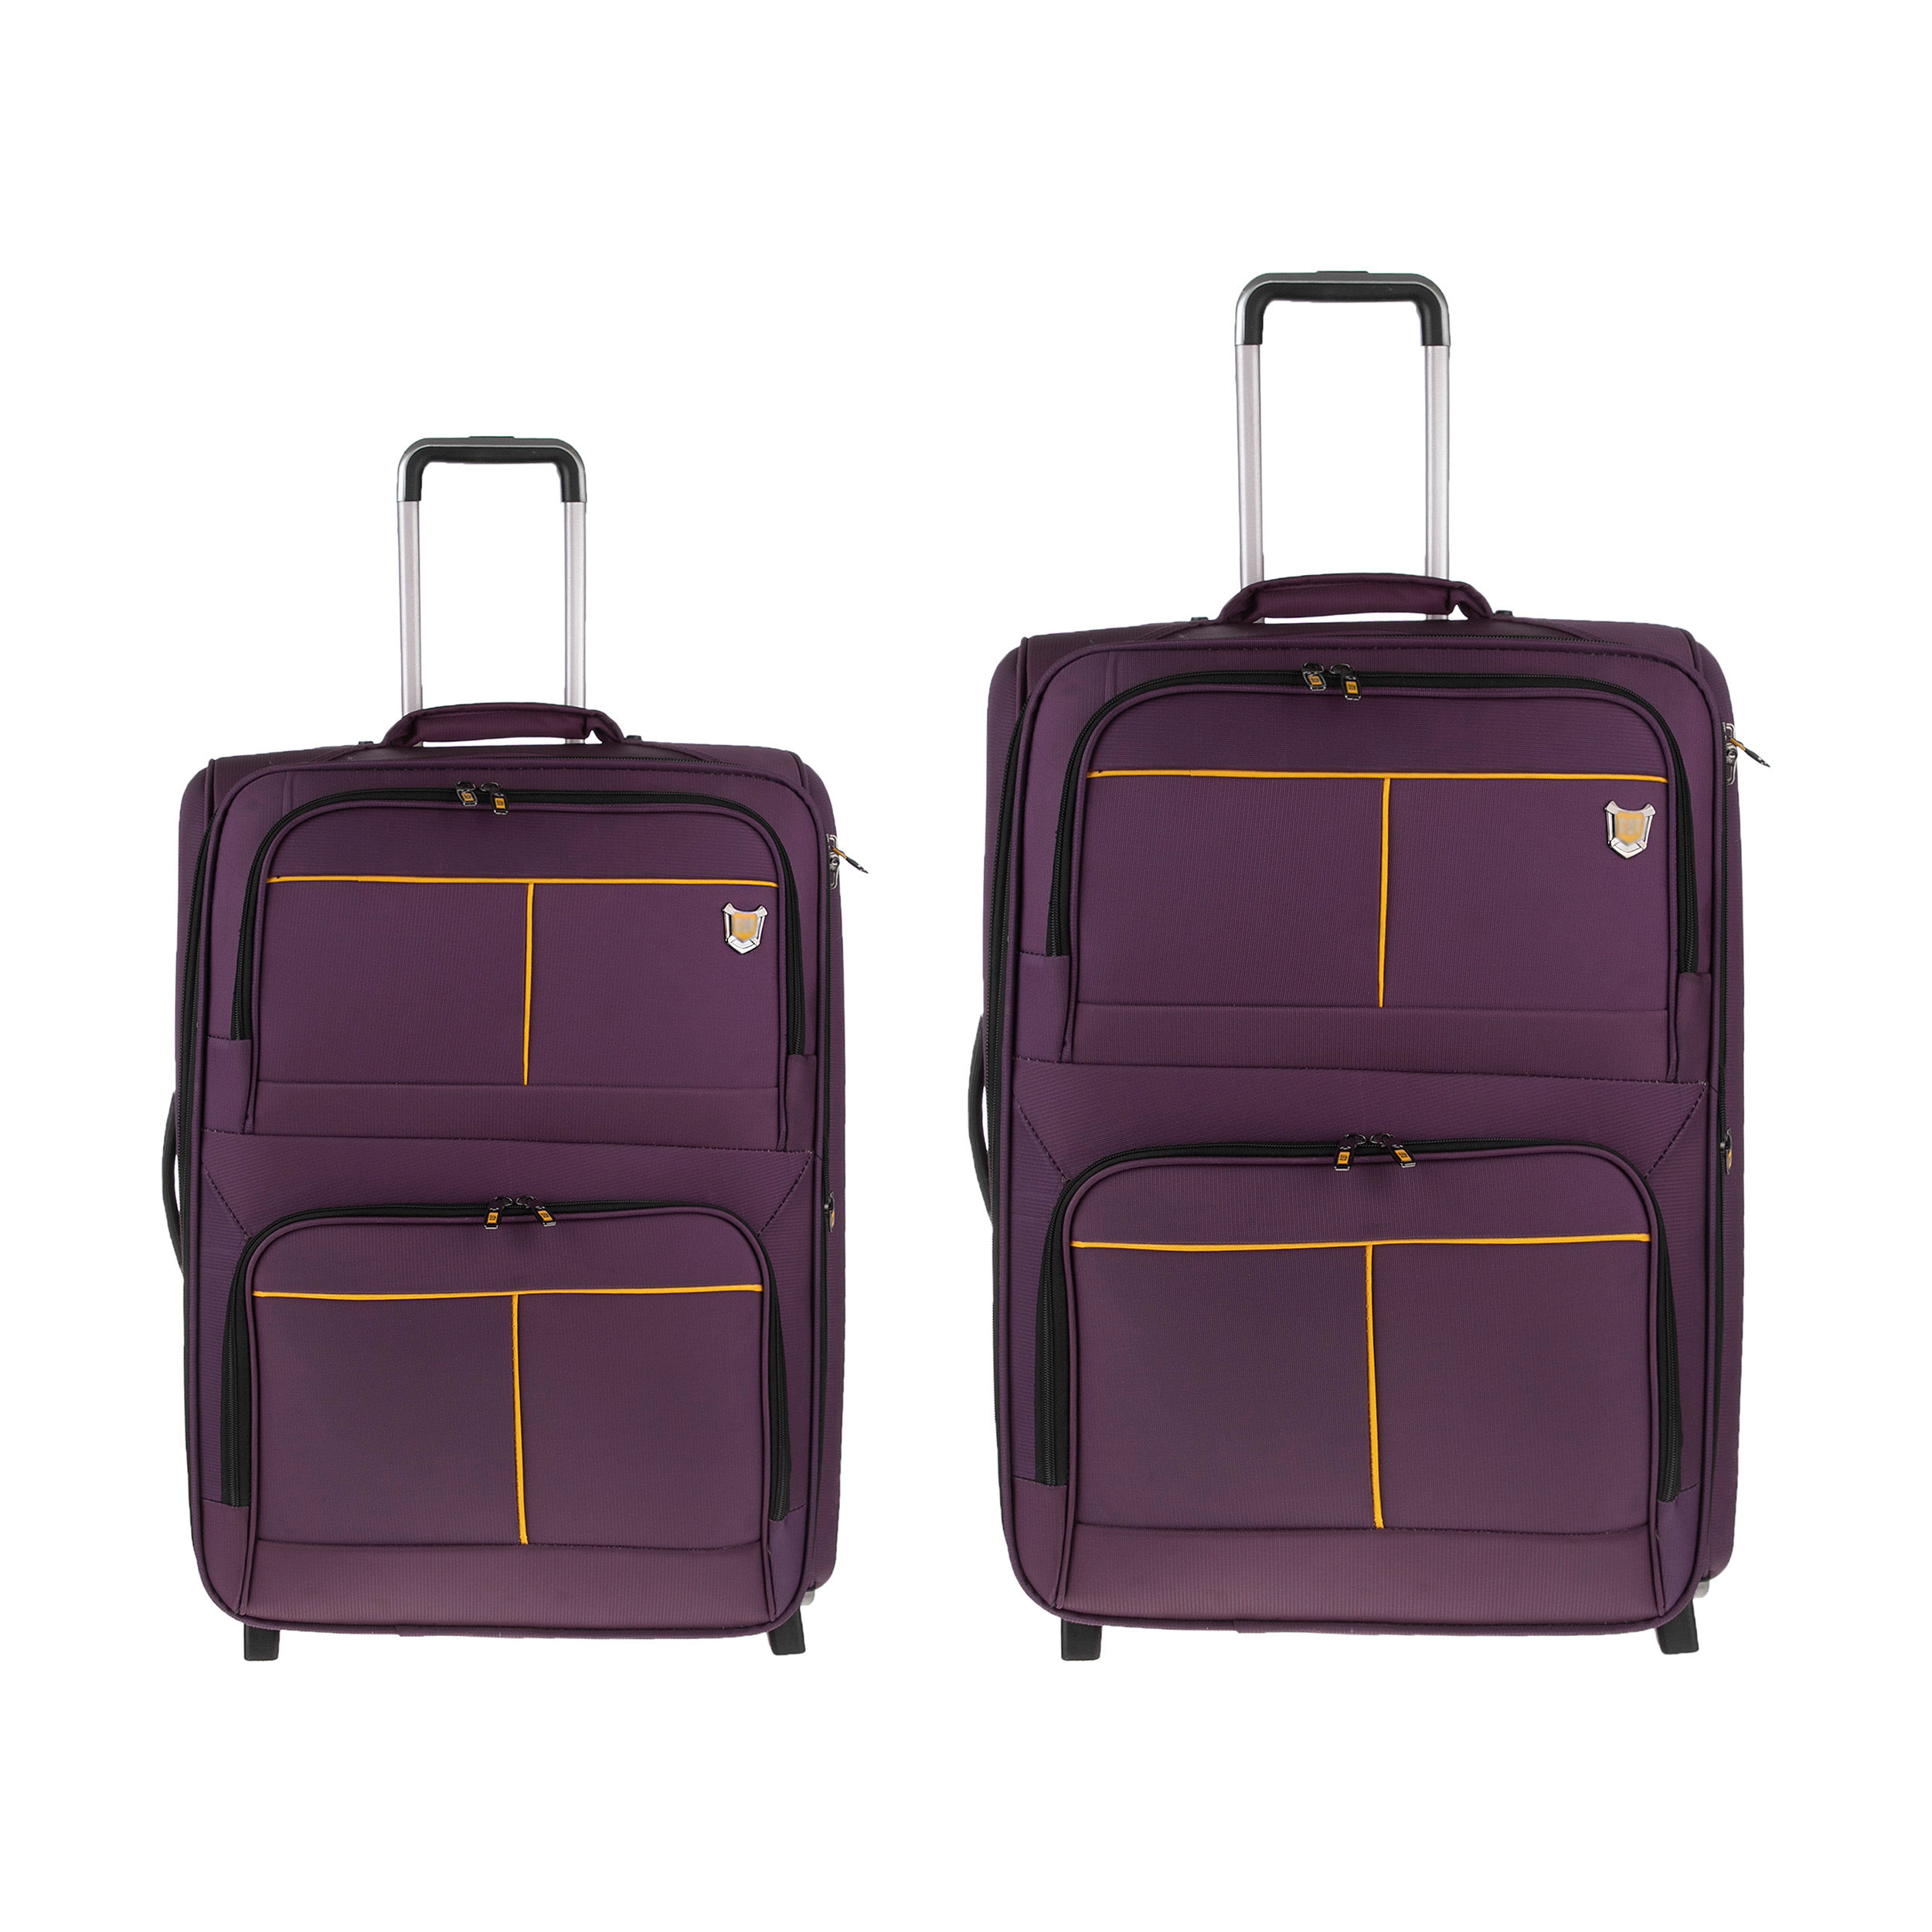 ست چمدان اوماسو مدل PP01 مجموعه دو عددی